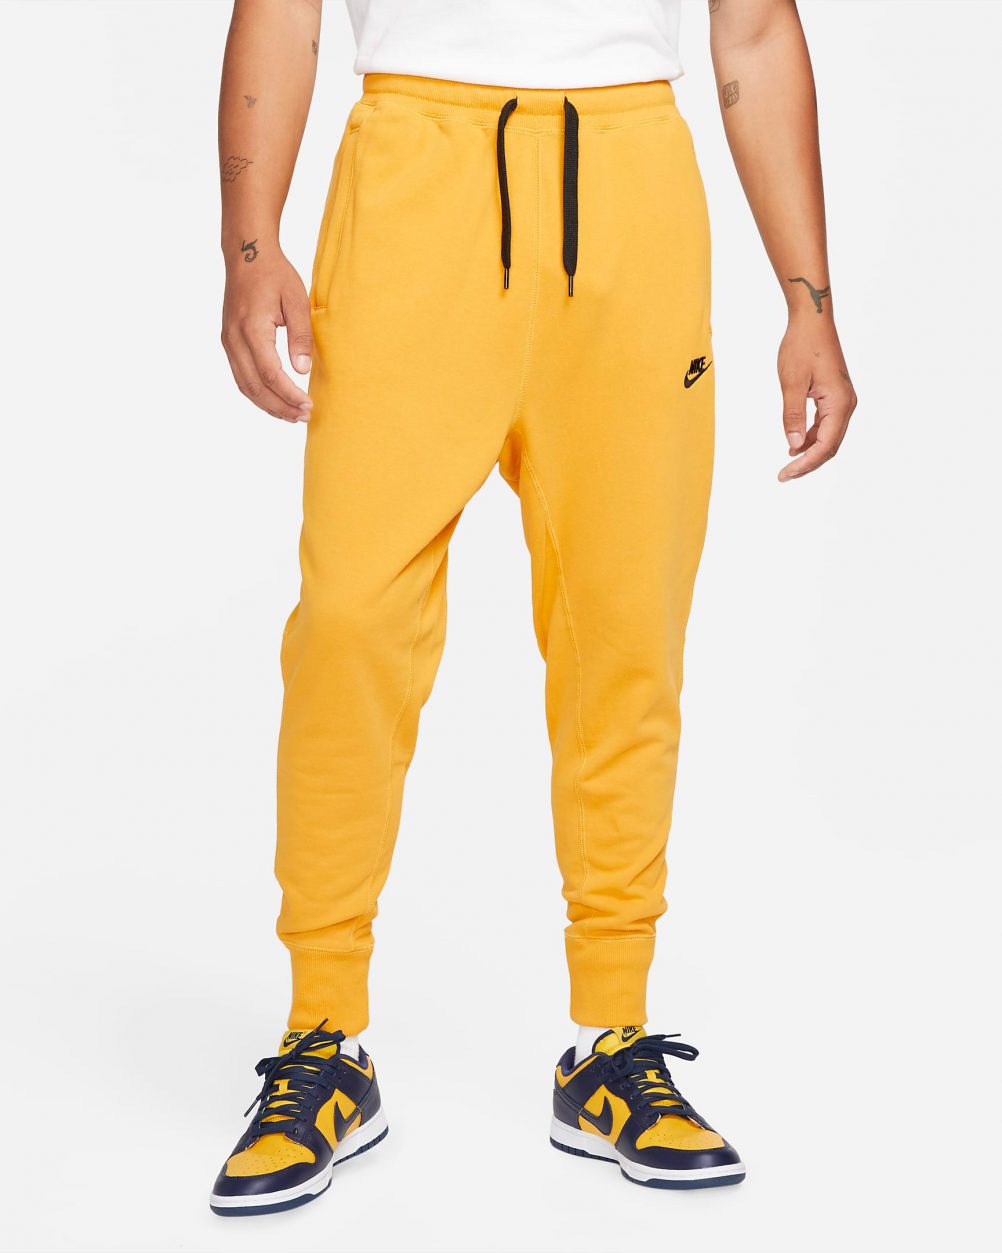 Air Jordan 1 High Pollen Nike Fleece Clothing Match